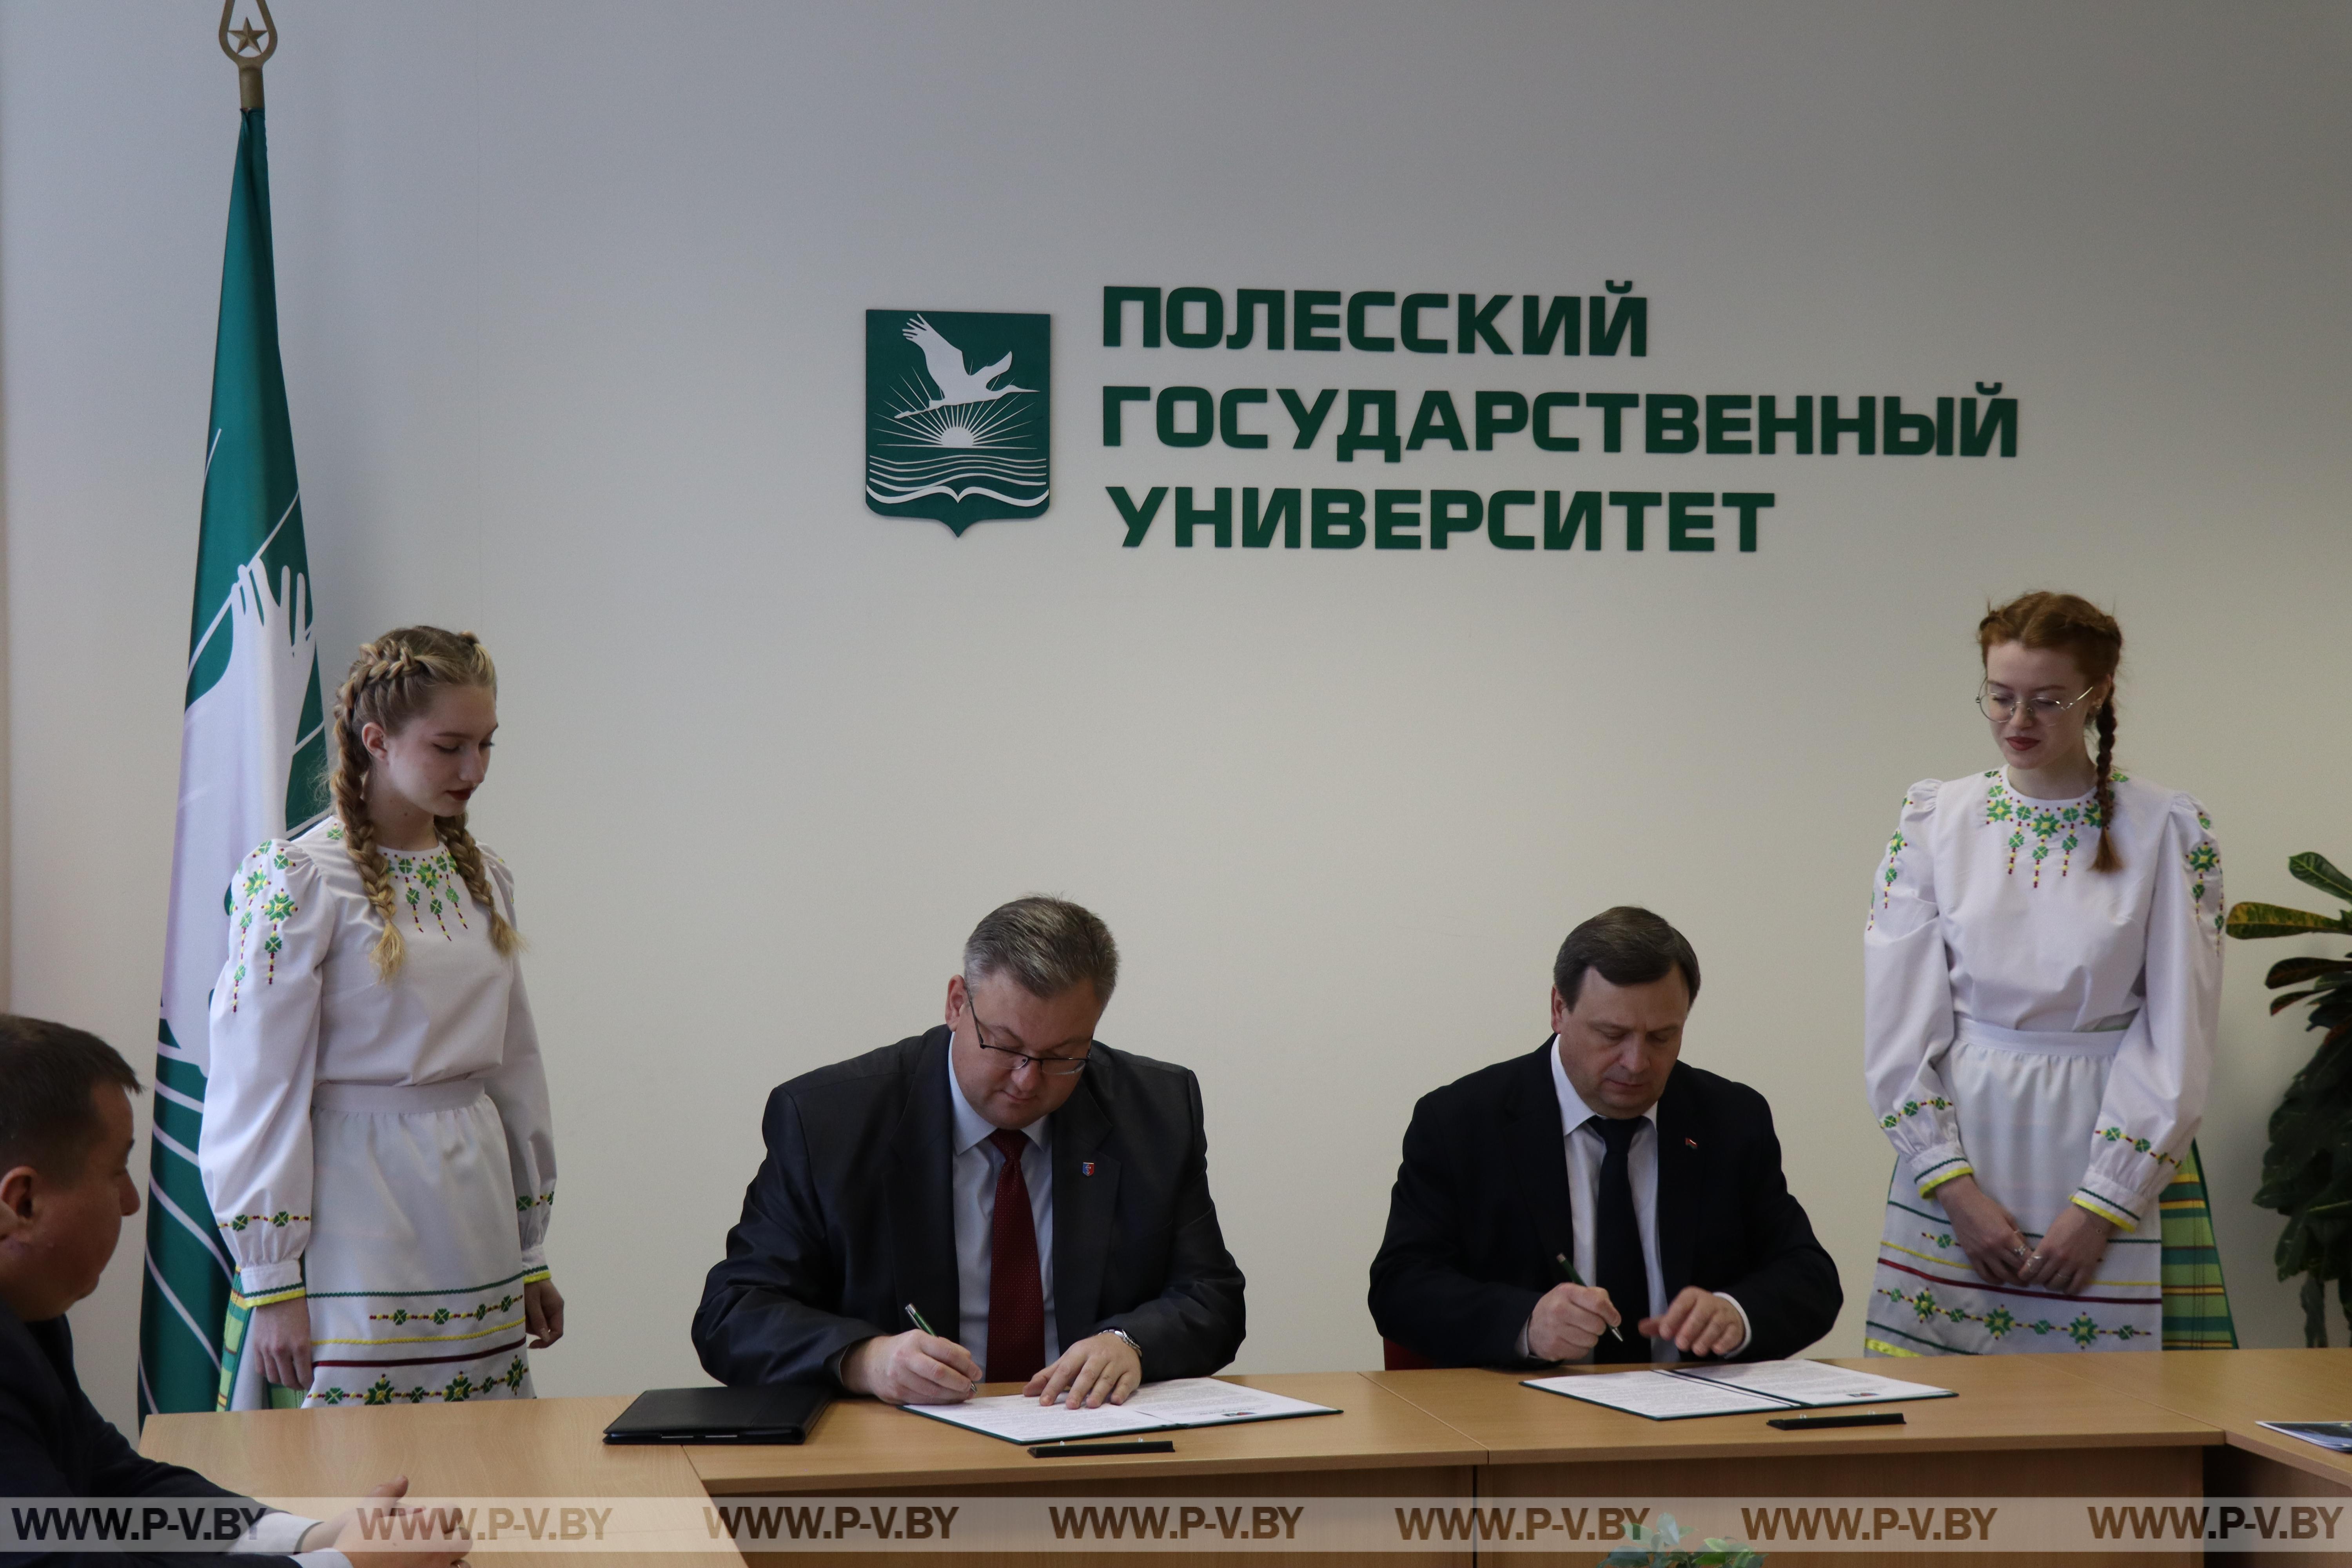 Пинский райисполком и Полесский государственный университет подписали договор о сотрудничестве